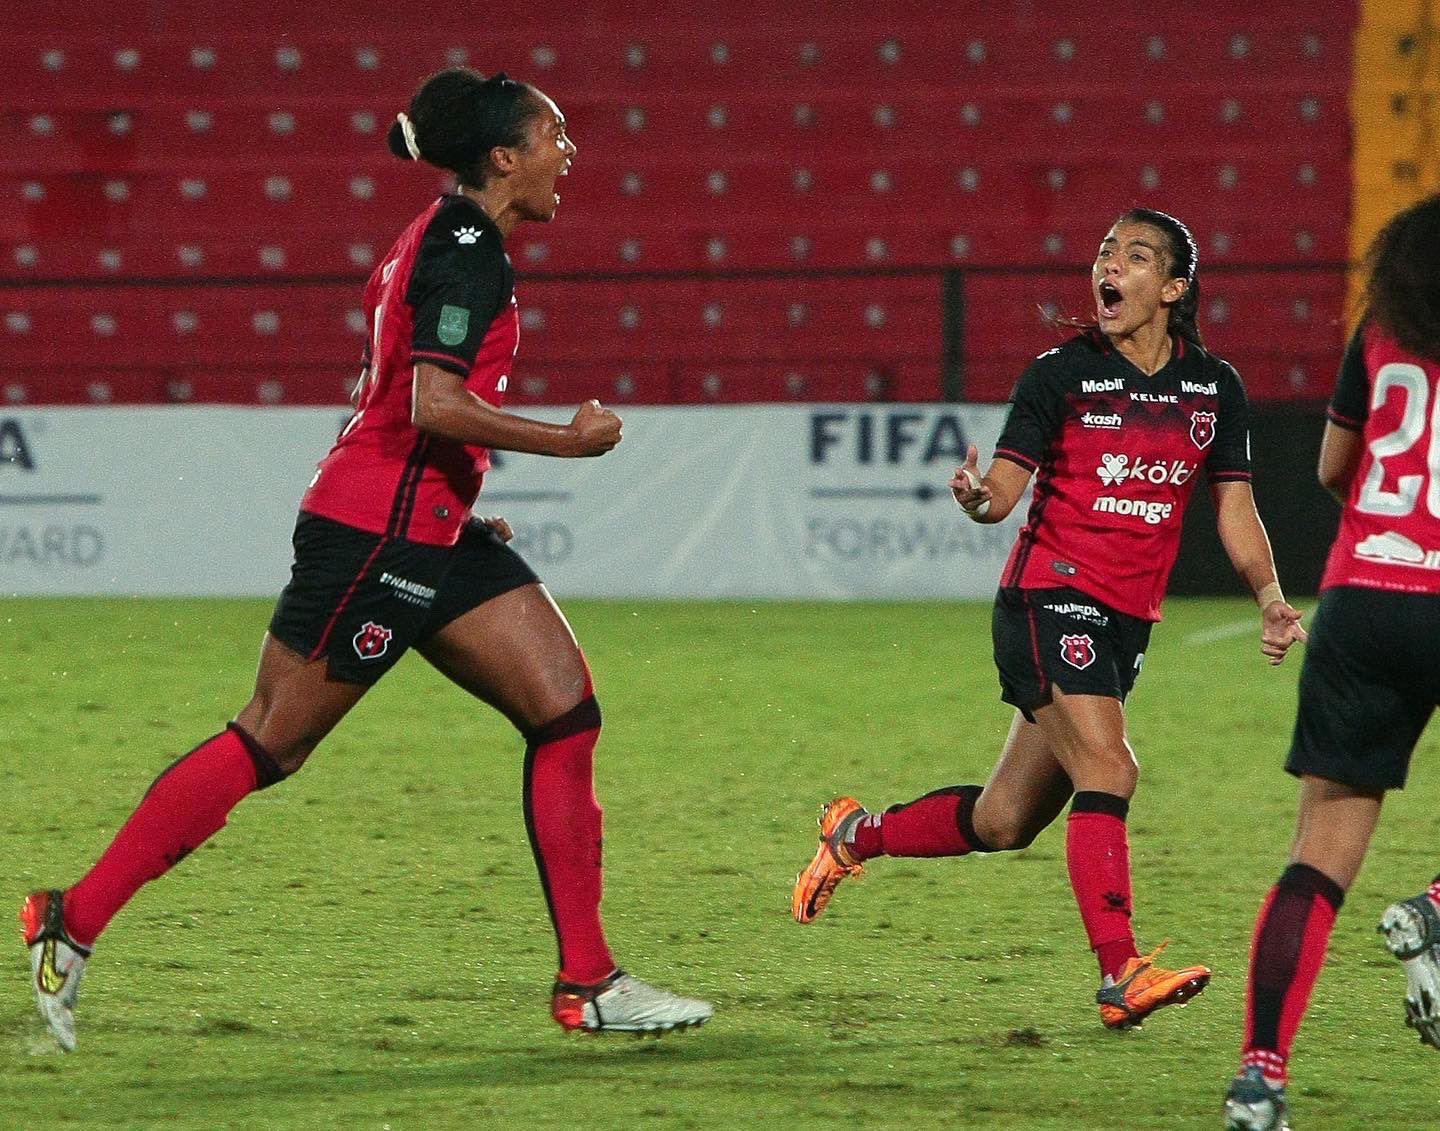 Un gol de Mia Corbin fue suficiente para que Alajuelense derrotara a Saprissa FF y se endosara su primera corona internacional en el fútbol femenino.